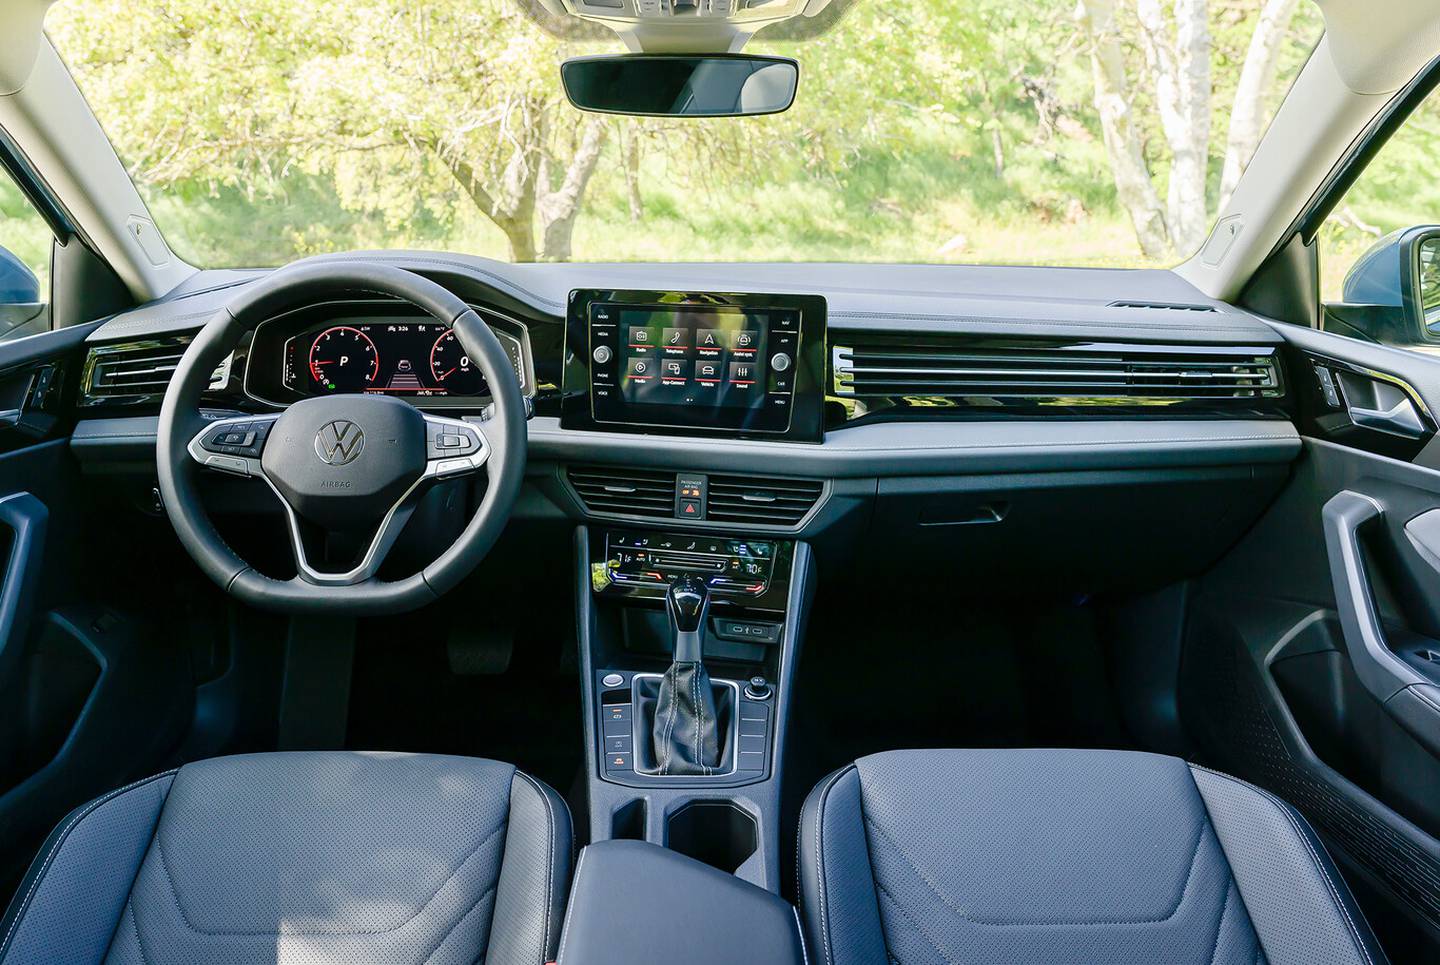 Su interior no se escapó a los ligeros cambios. Foto: VW.